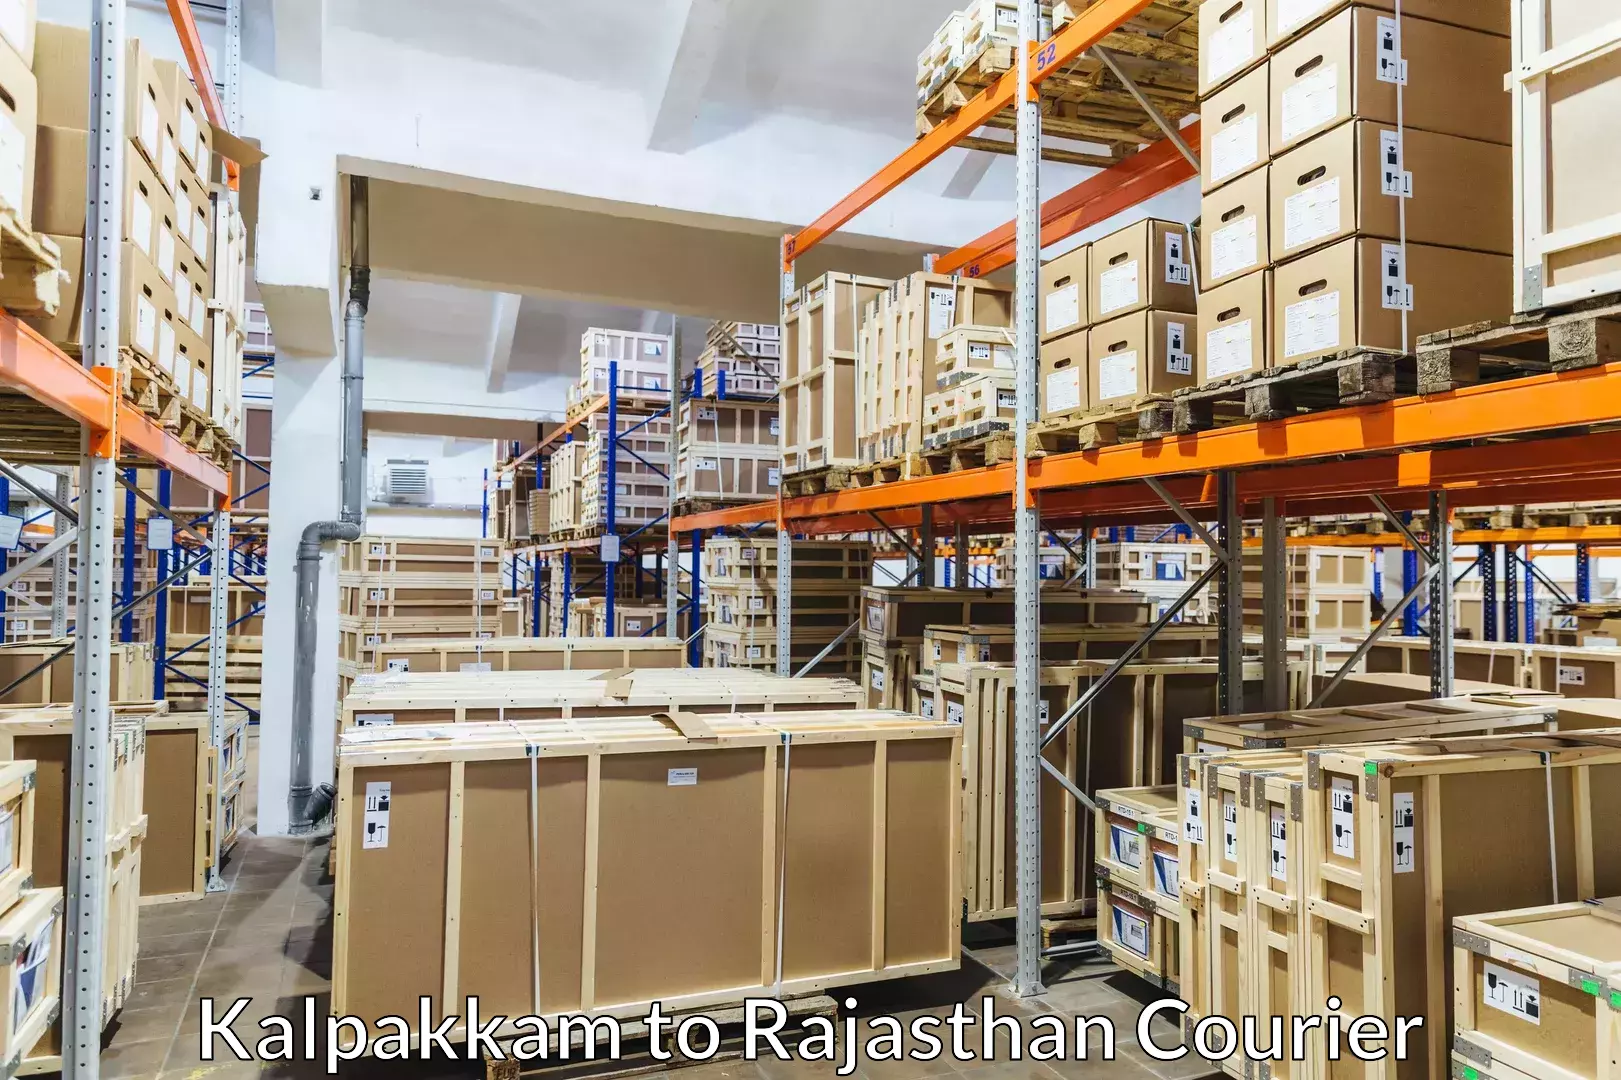 Baggage relocation service Kalpakkam to Rajasthan